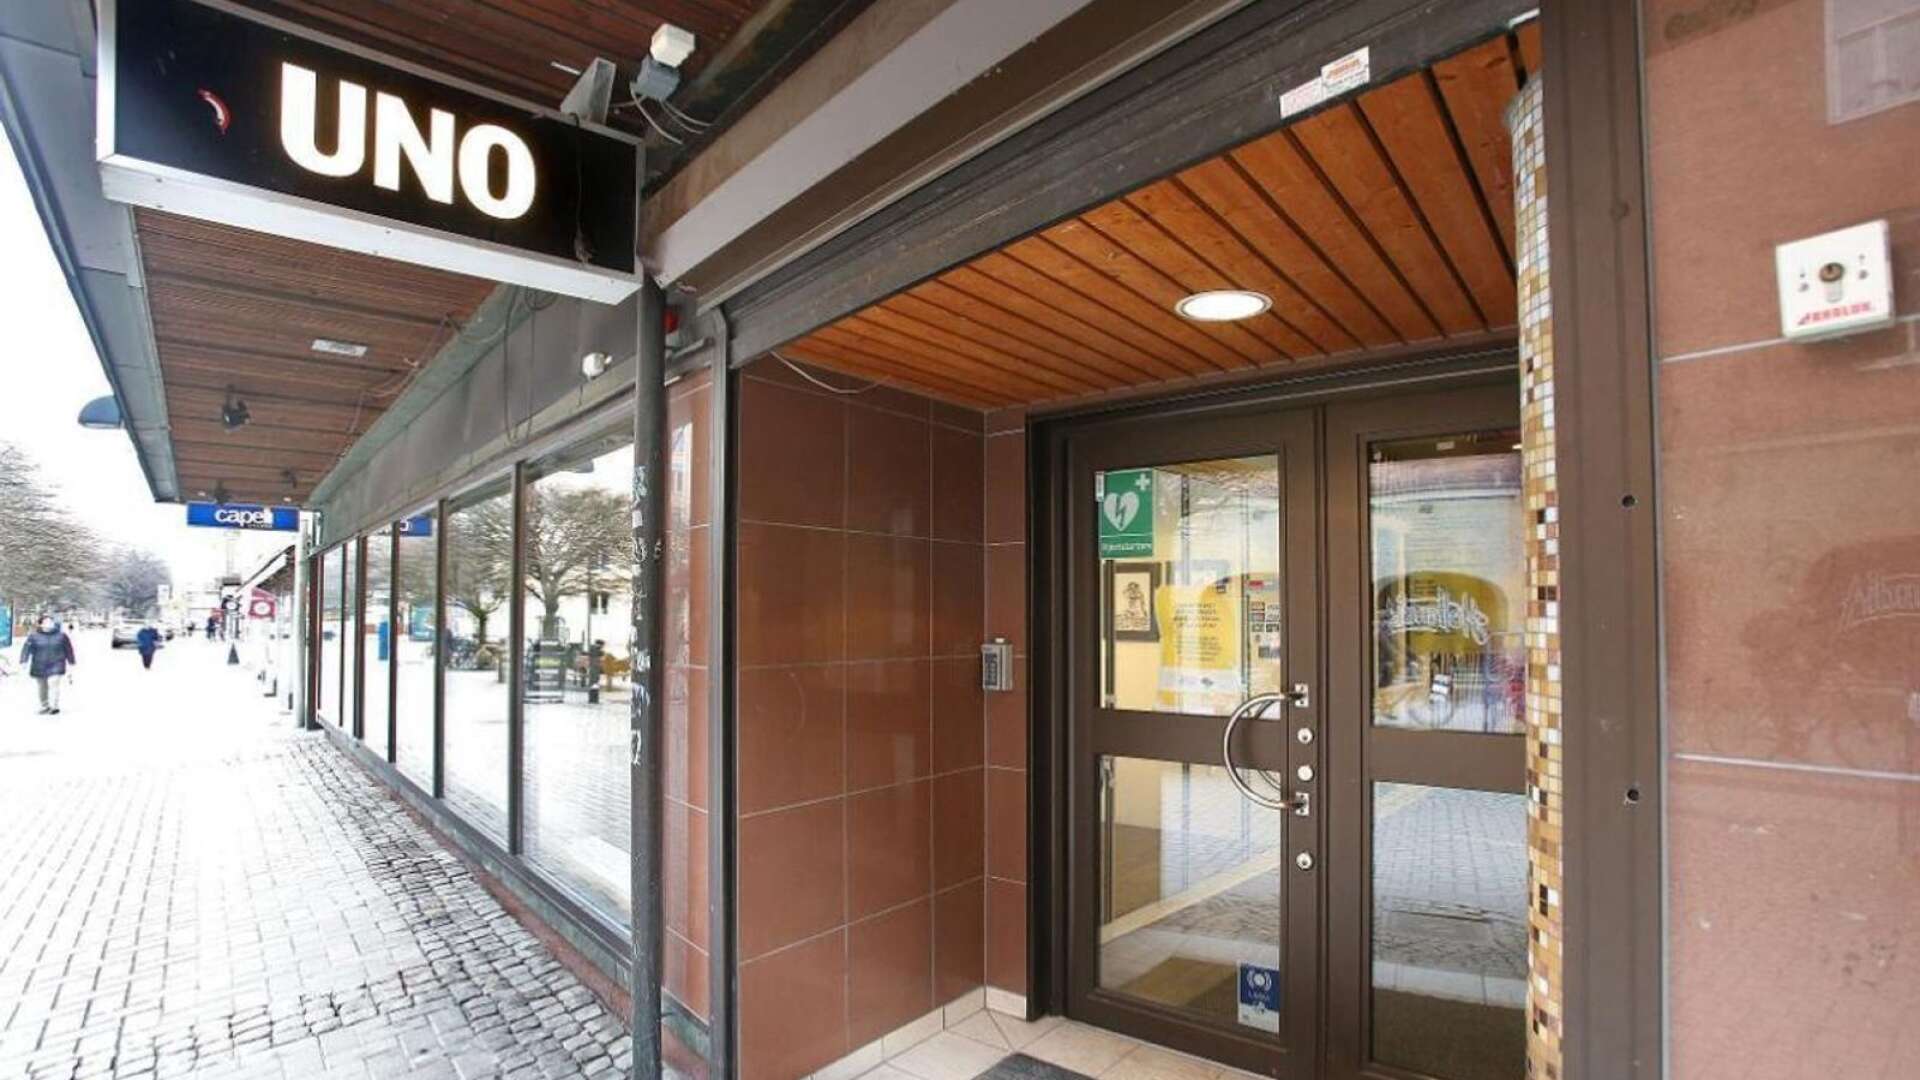 Uno, Ungdomens hus, ska flytta från sina lokaler i centrala Karlstad till Sundsta.